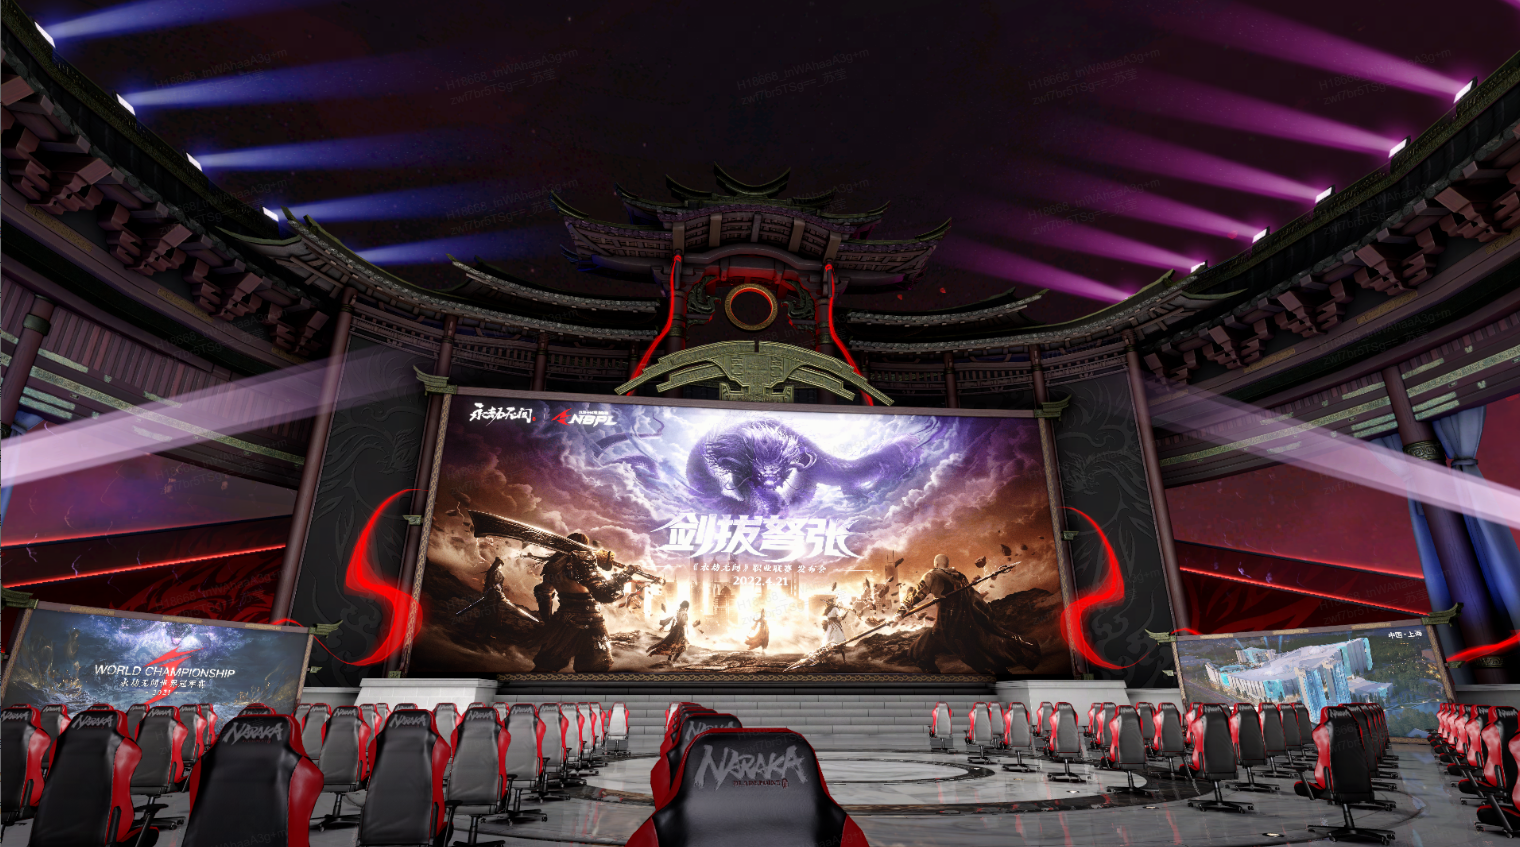 这是一张电子竞技比赛场馆的照片，舞台前有排列整齐的电脑椅，背景是结合传统建筑风格的现代设计，氛围科技感十足。